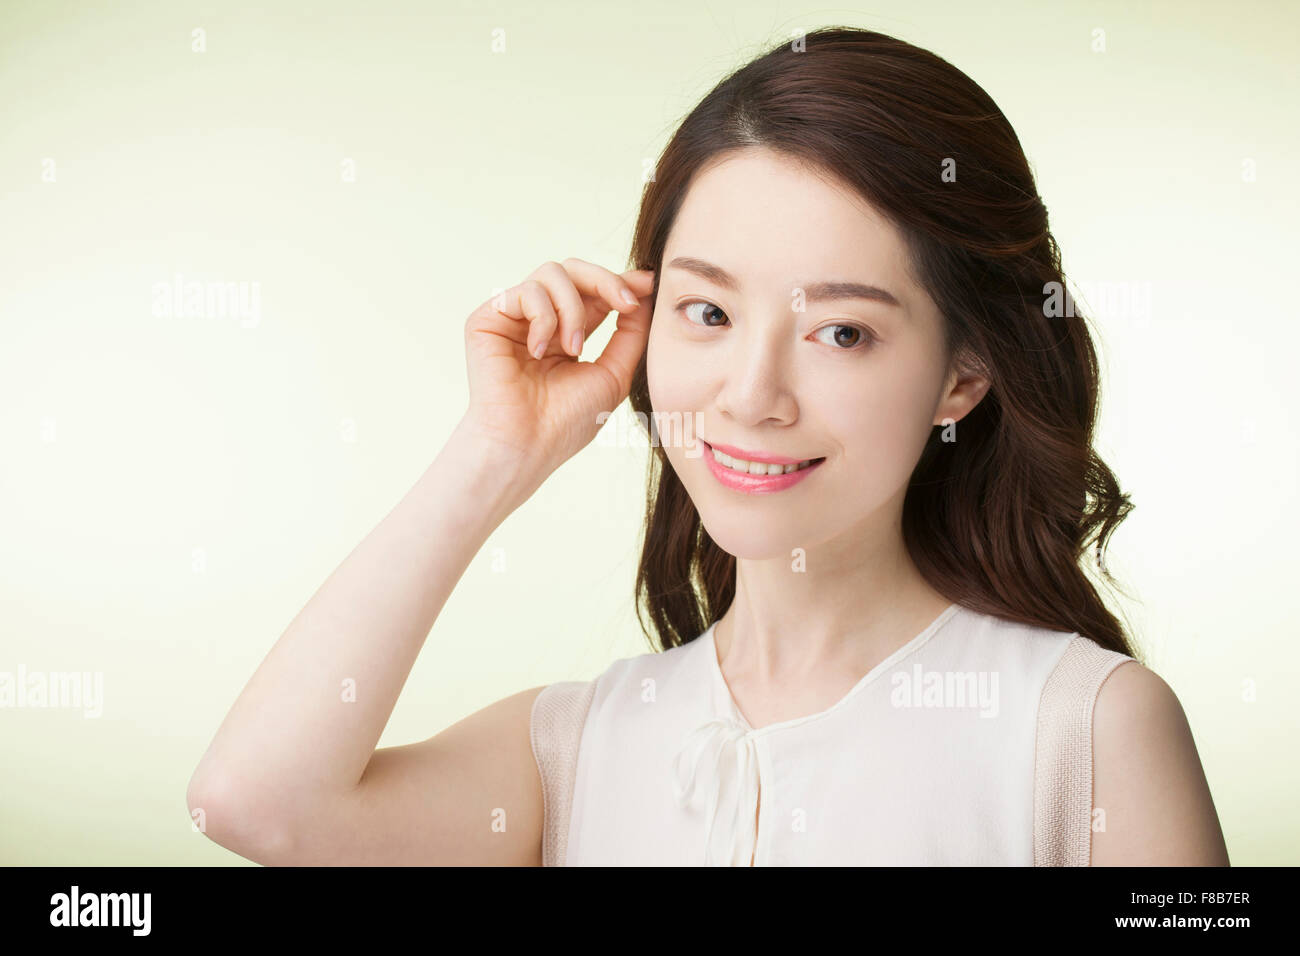 Koreanerin mit lange gewellte Haare in weißen ärmellosen Shirt ihr Haar zurück in ihr Ohr zu ziehen und auf der Suche zur Seite mit einem Lächeln Stockfoto